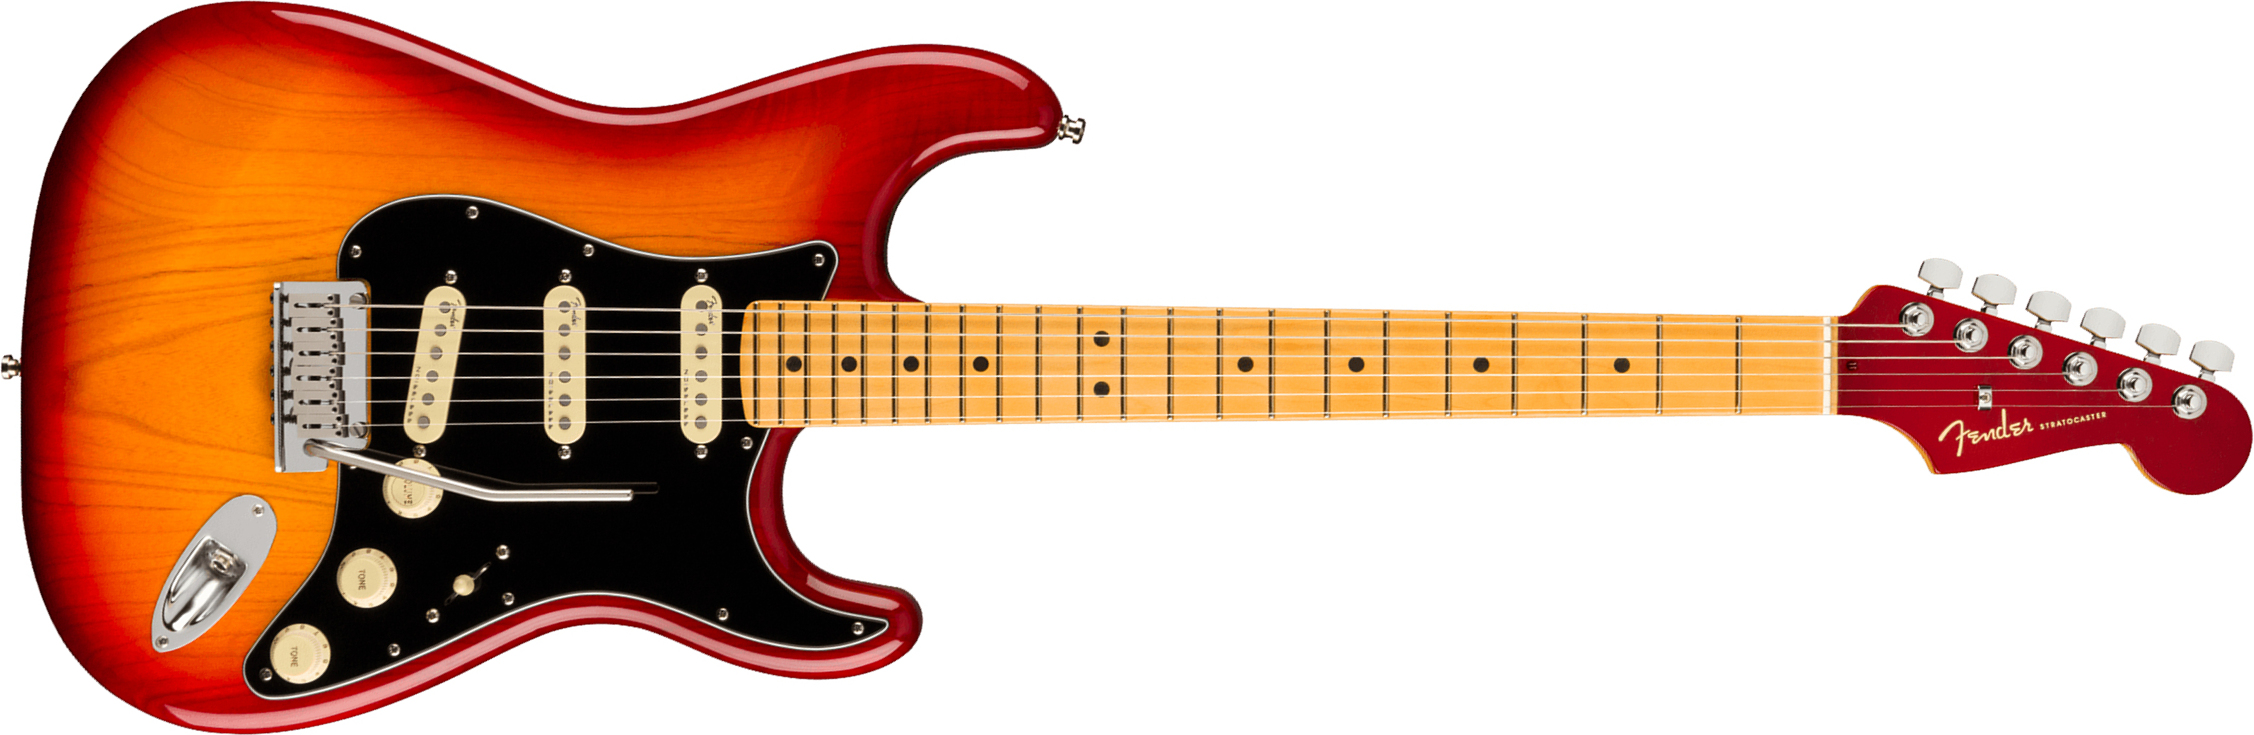 Fender Strat American Ultra Luxe Usa Mn +etui - Plasma Red Burst - Elektrische gitaar in Str-vorm - Main picture